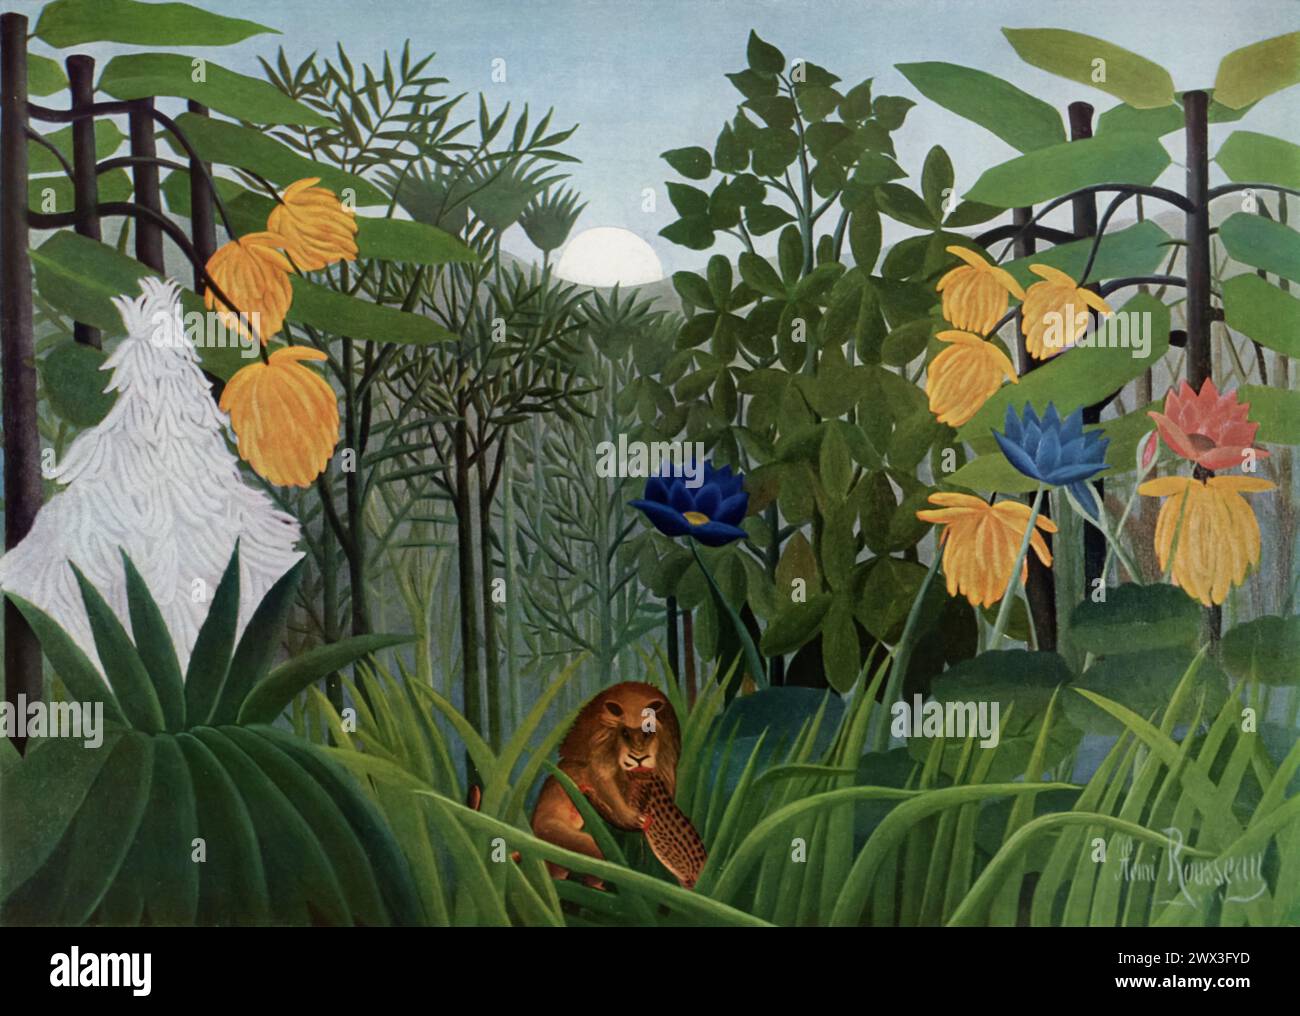 Henri Rousseaus „The repast of the Lion“ (um 1907), ausgestellt im Metropolitan Museum of Art, New York, ist ein anschauliches Beispiel für Rousseaus naiven oder primitiven Stil, der eine Dschungelszene darstellt, in der ein Löwe seine Beute feiert. Bekannt für seine autodidaktische Technik und traumhafte, detaillierte Landschaften, stellt Rousseaus Werk die Ruhe der Natur mit der Rauheit des Überlebens in Kontrast. Stockfoto